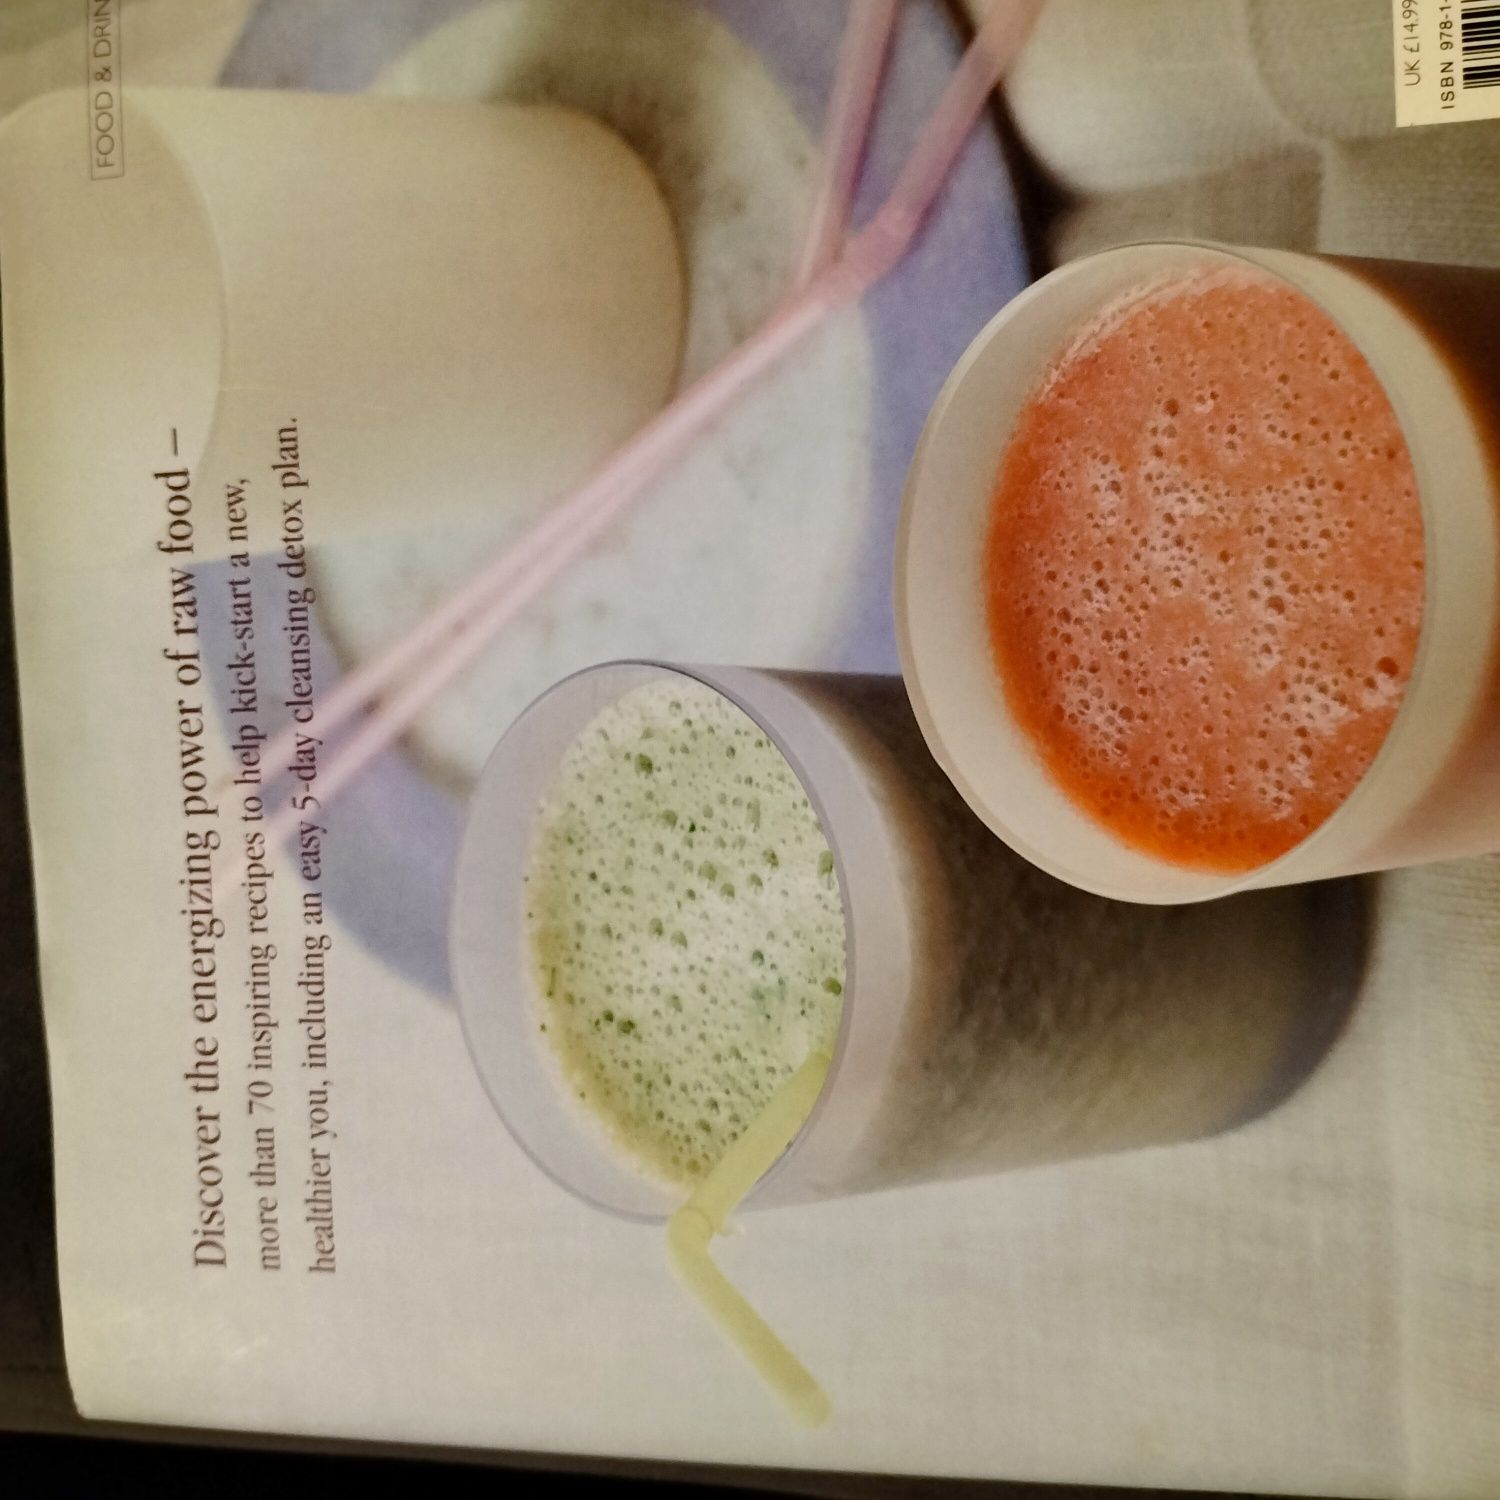 Raw Food Detox książka kucharska w j. angielskim